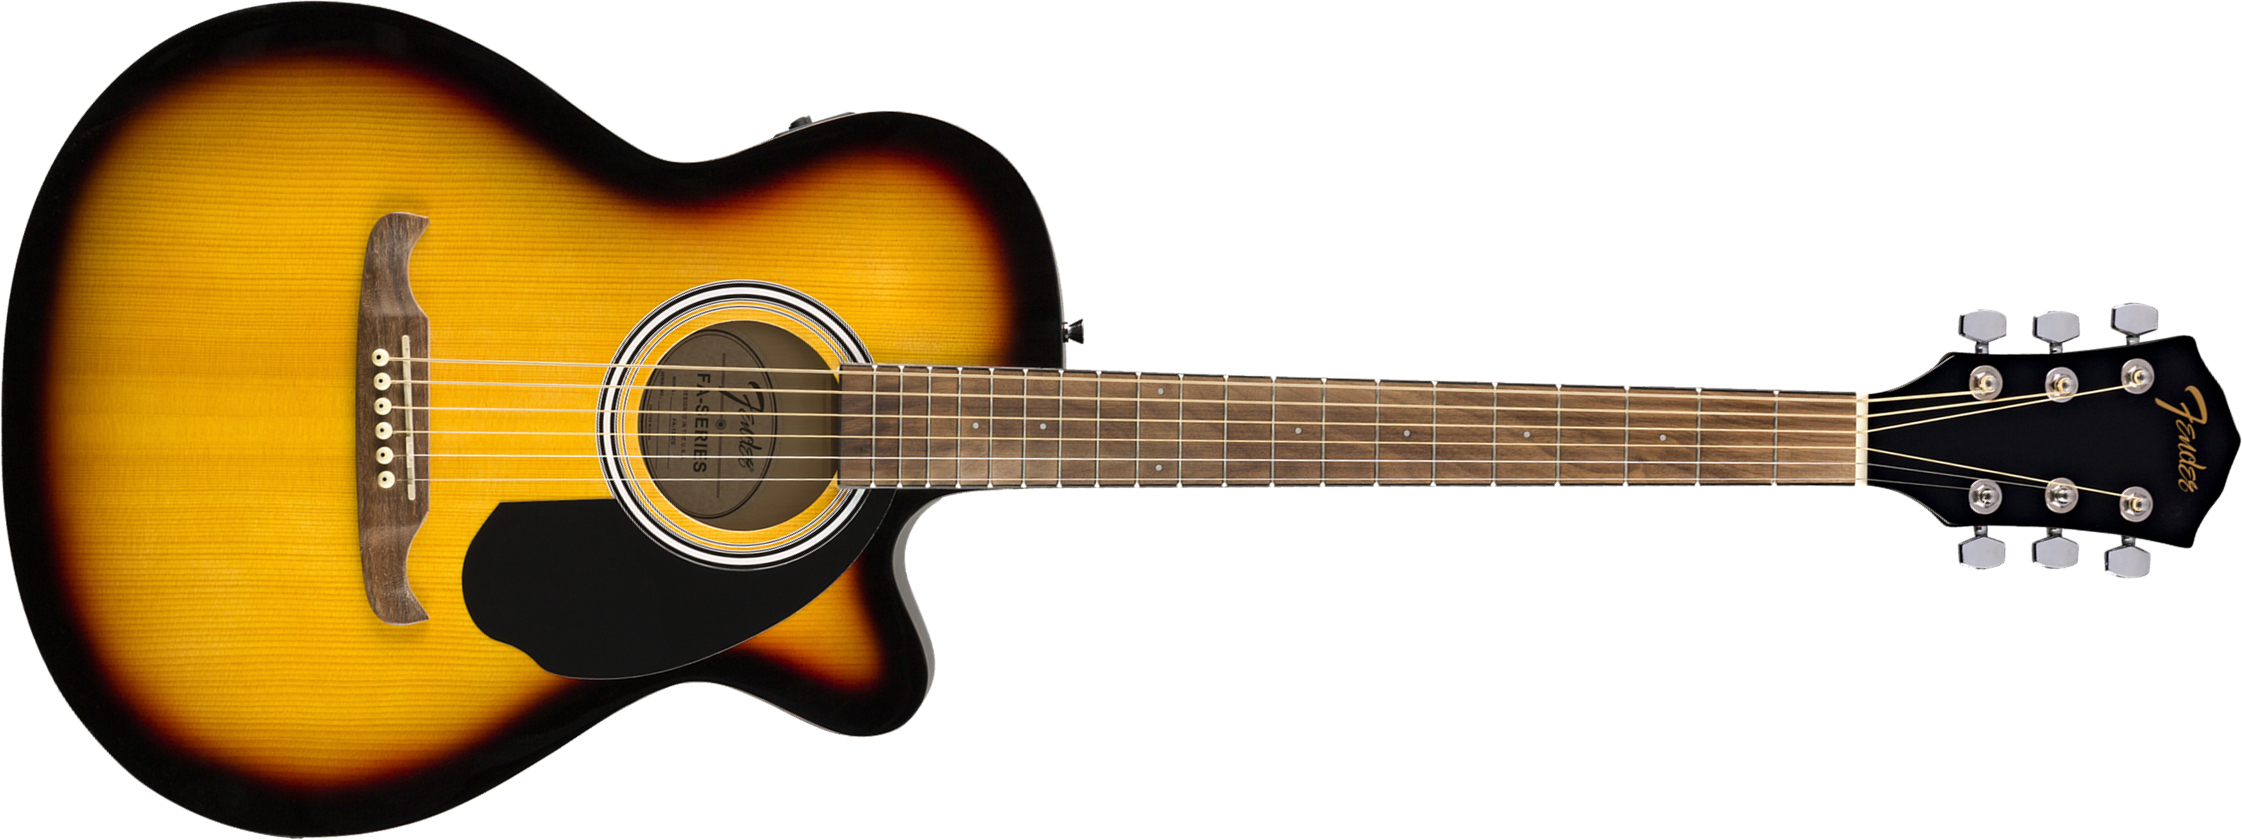 Fender Fa-135ce Concert Cw Epicea Tilleul Wal - Sunburst - Guitare Electro Acoustique - Main picture